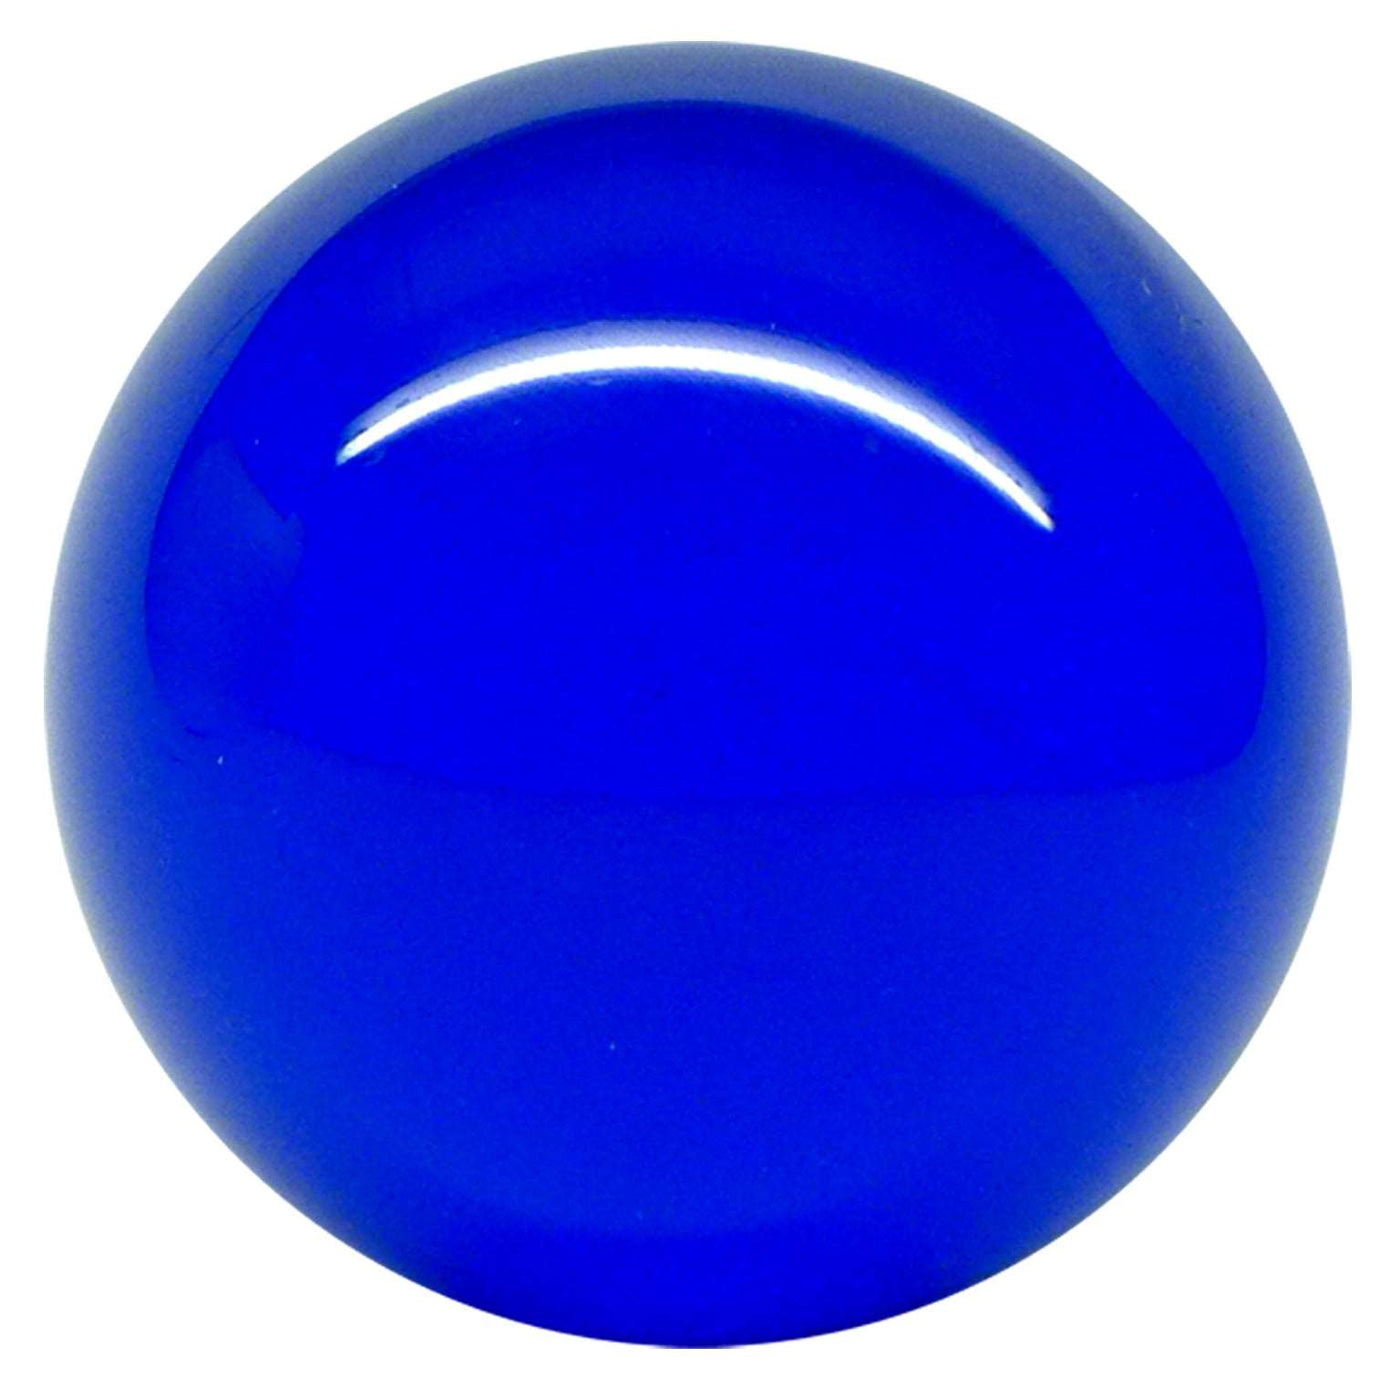 Balle de contact Acrylique Bleu Transparent 70mm 175g et étui de protection